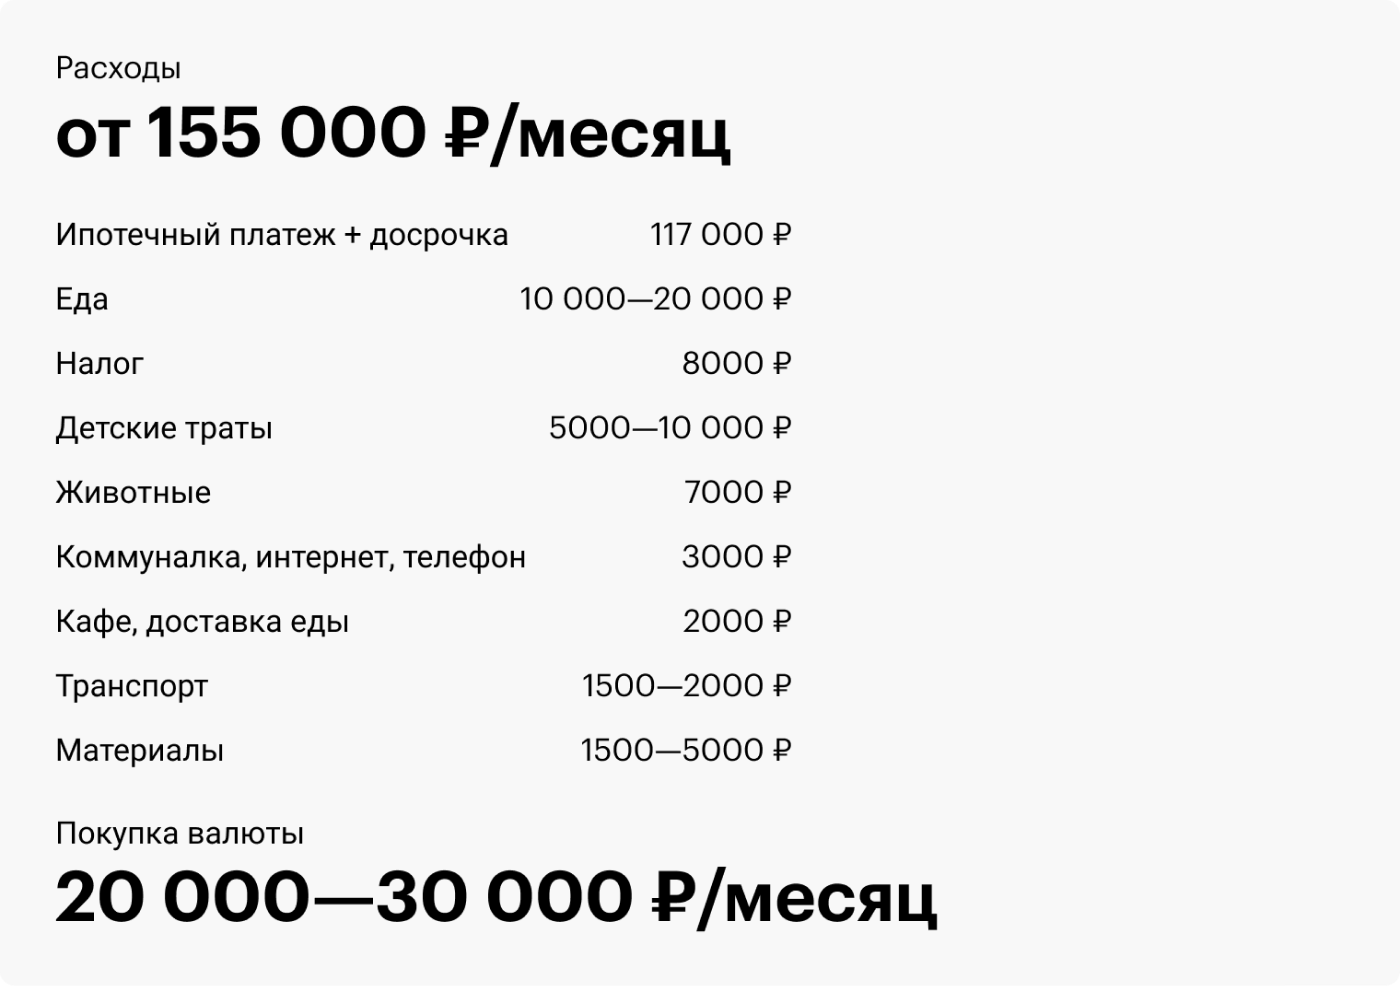 Сколько зарабатывают дизайнеры интерьера в россии. Сколько зарабатывает дизайнер. С̠к̠о̠л̠ь̠к̠о̠ з̠а̠р̠а̠б̠а̠т̠ы̠в̠а̠ю̠т̠ д̠и̠з̠а̠й̠н̠е̠р̠. Сколько зарабатывает дизайнер в месяц. Сколько зарабатывает модельер.